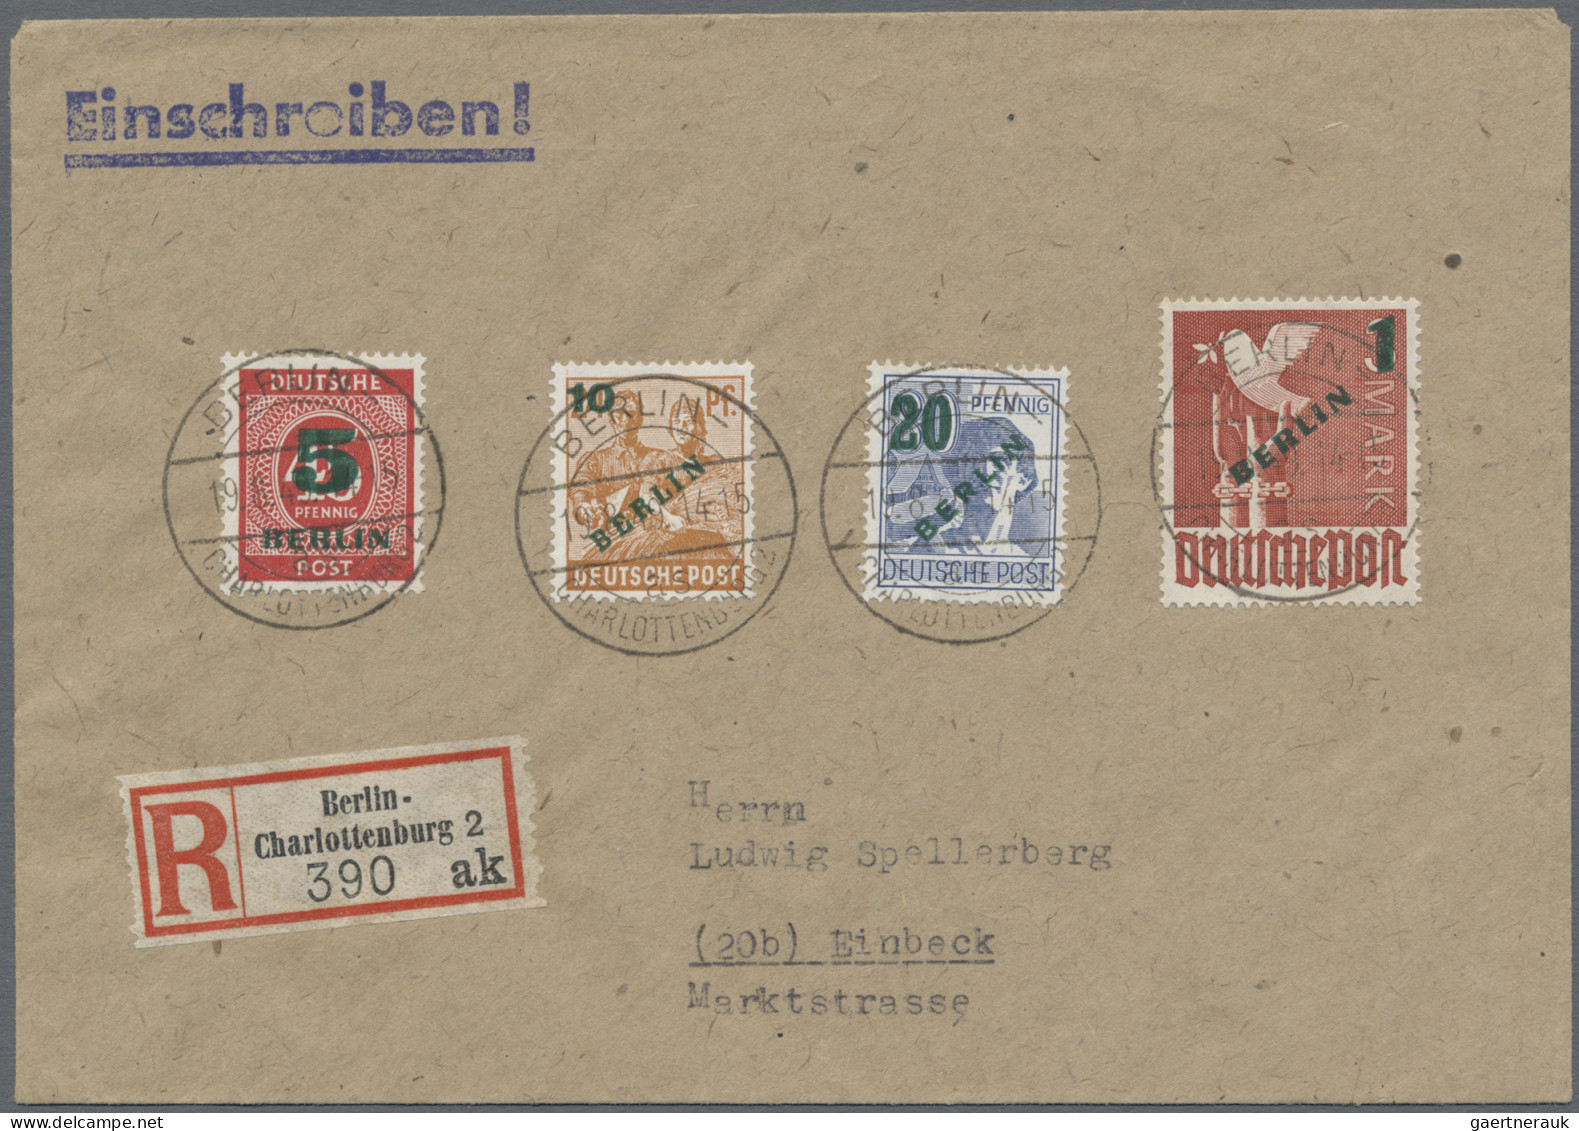 Berlin: 1948/1957 (ca.), Gehaltvolle Kollektion von rund 170 Belegen in 2 Safe-B